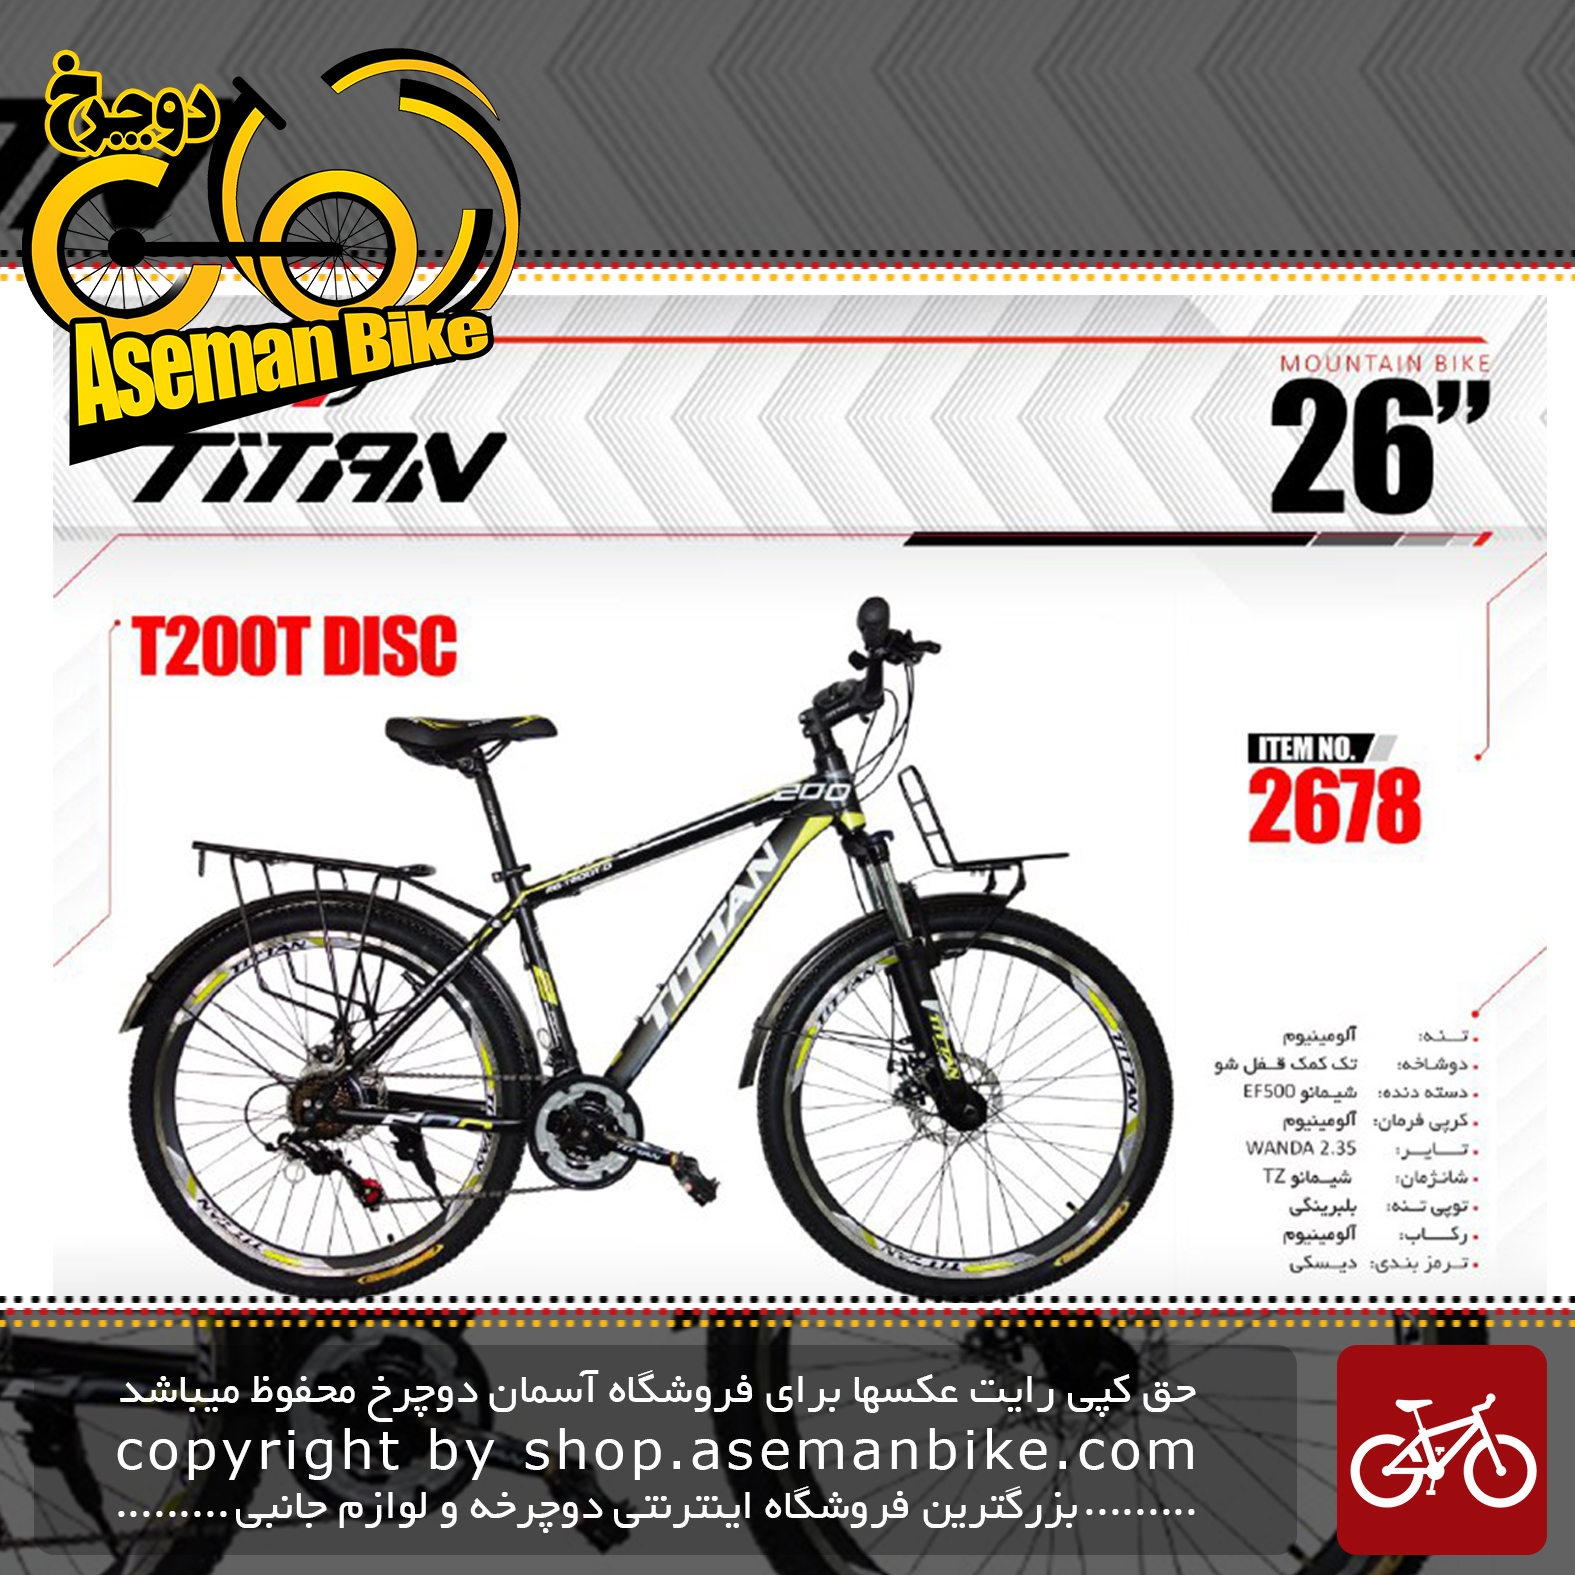 دوچرخه کوهستان توریستی تایتان سایز 26 مدل تی 200 دیسک TITAN SIZE 26 T200 DISC